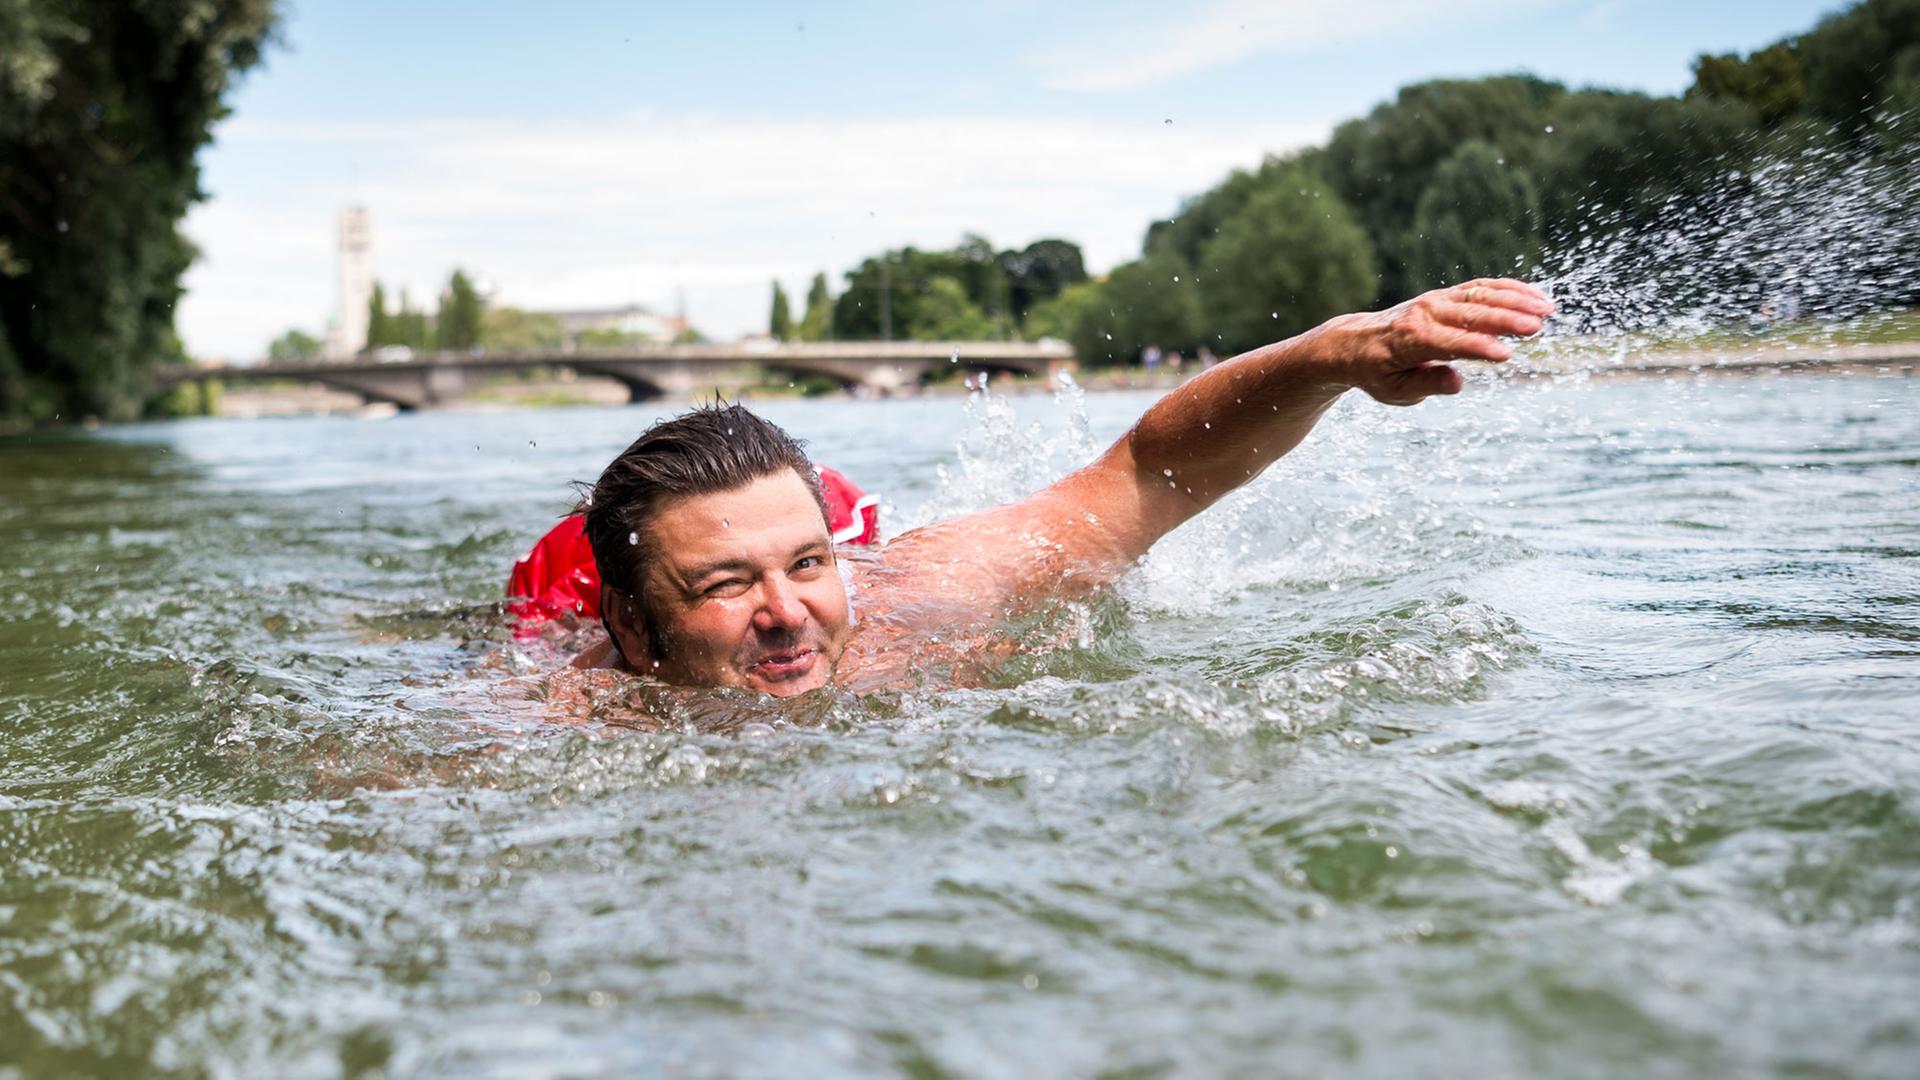 Benjamin David schwimmt am 28.06.2017 in der Isar in München. Um überfüllten Straßen und Radwegen zu entgehen, schwimmt David regelmäßig vom Flussufer vor seiner Wohnung rund zwei Kilometer an den Kulturstrand am Deutschen Museum.